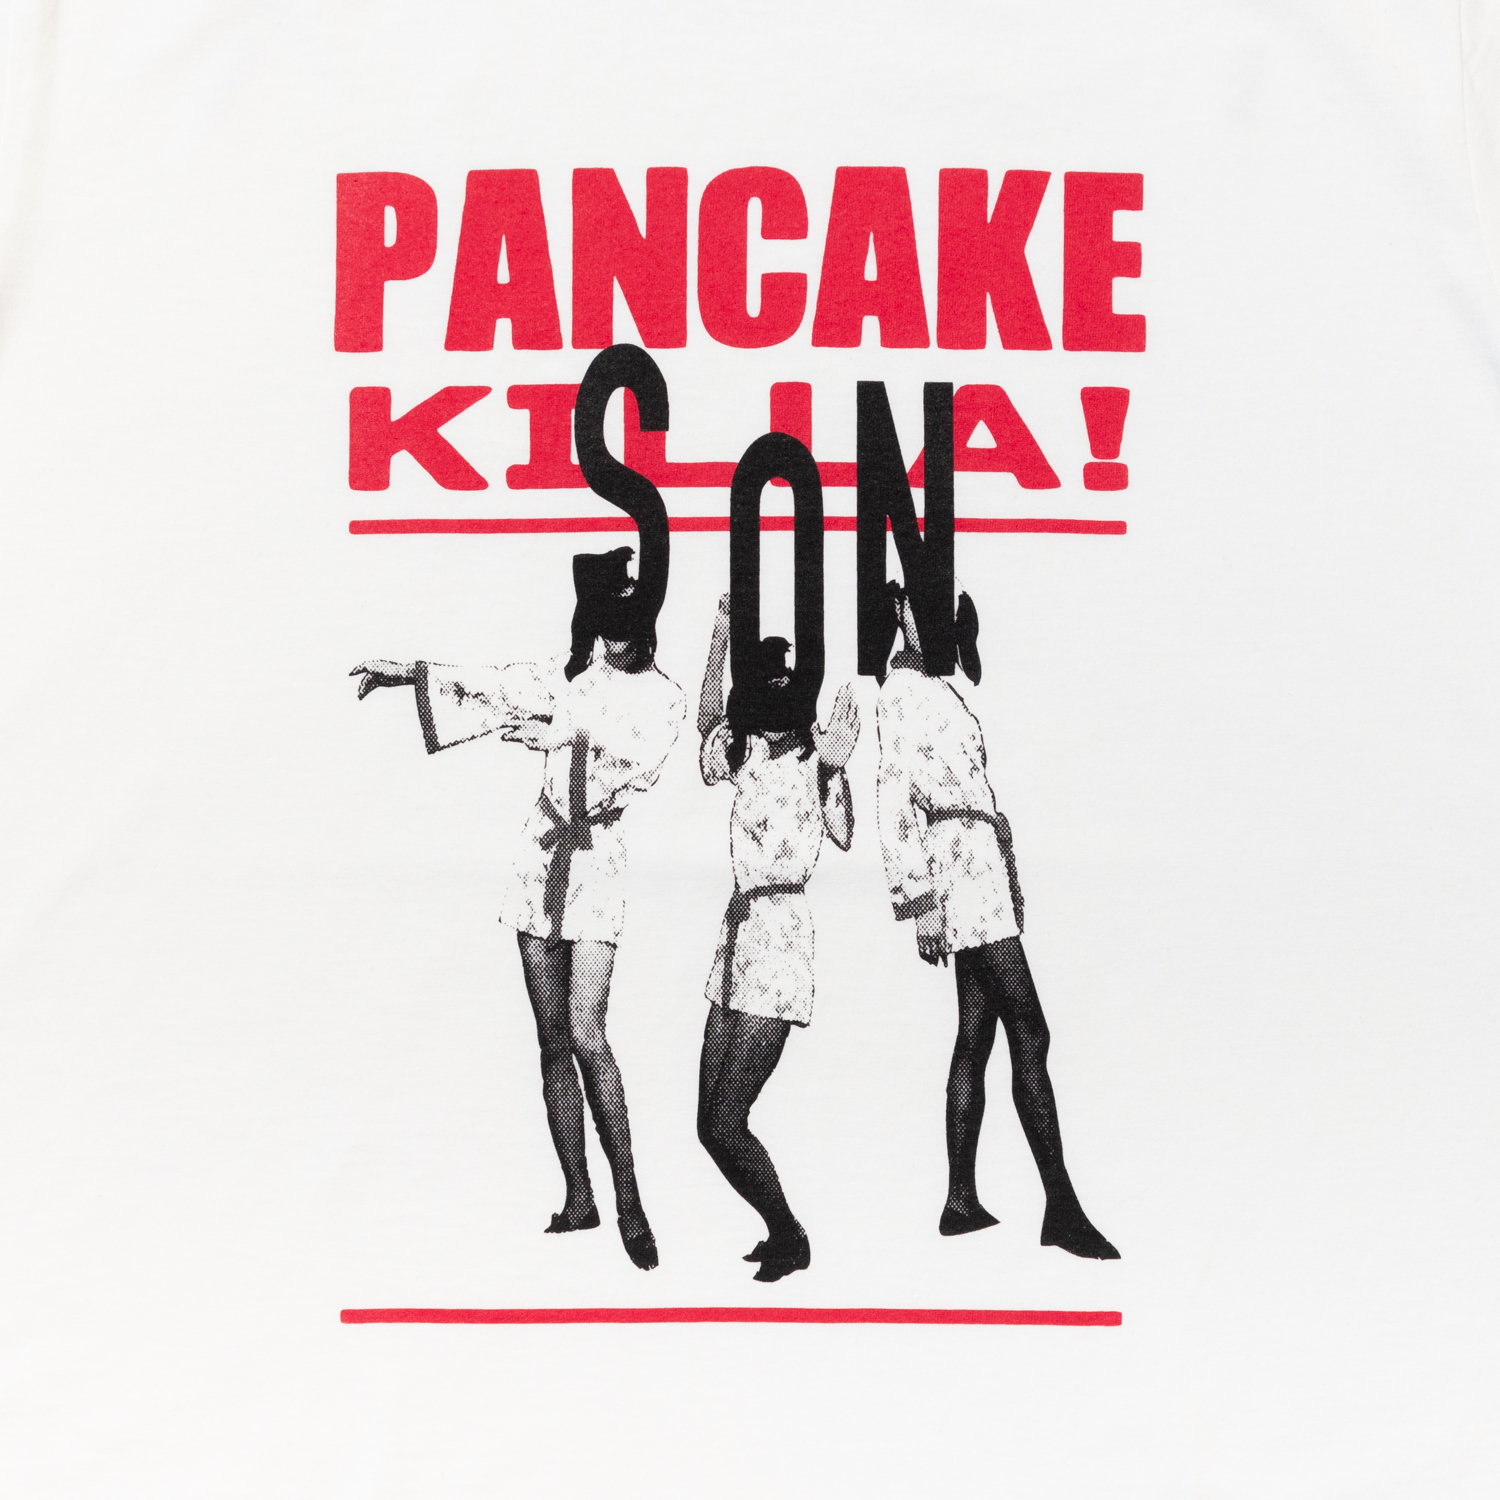 Pancake Killa / son designed by Ryohei kazumi